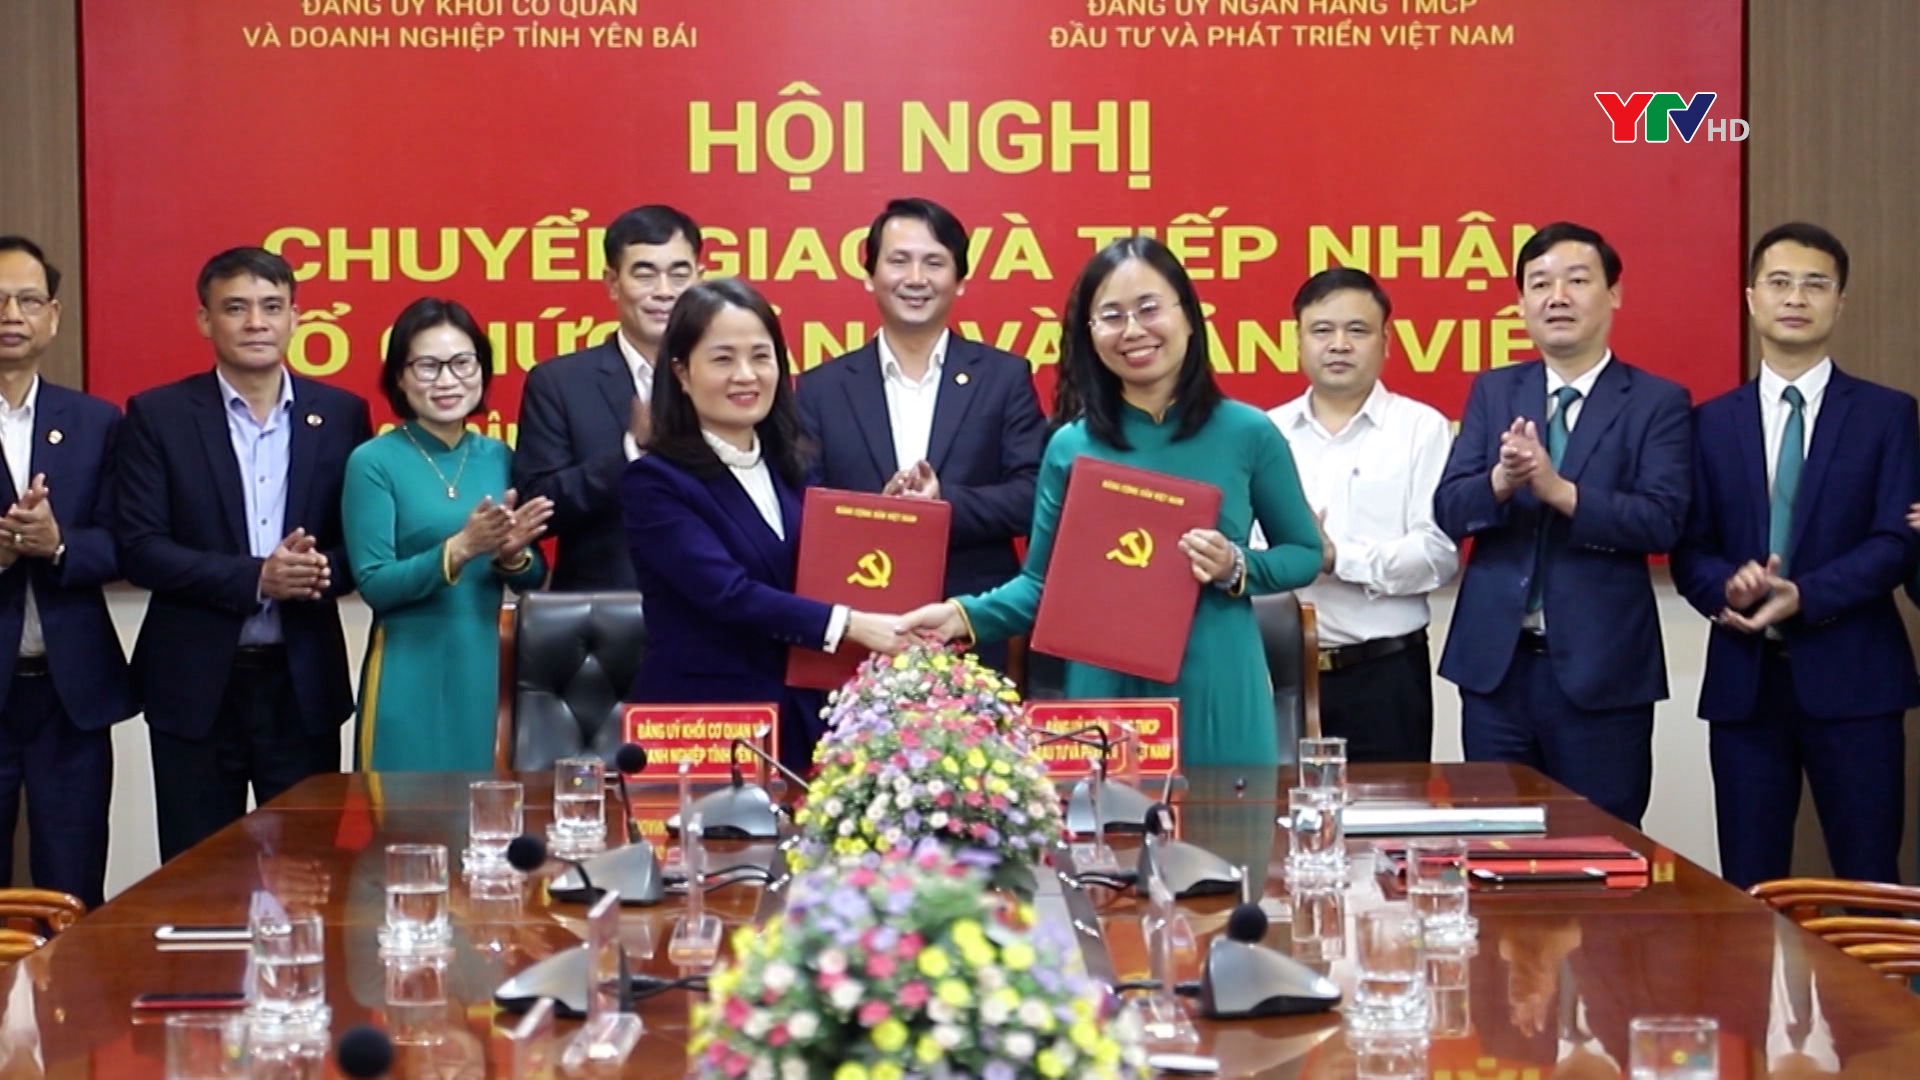 Chuyển giao Đảng bộ cơ sở Ngân hàng TMCP Đầu tư và phát triển Việt Nam (BIDV) chi nhánh Yên Bái về Đảng bộ BIDV